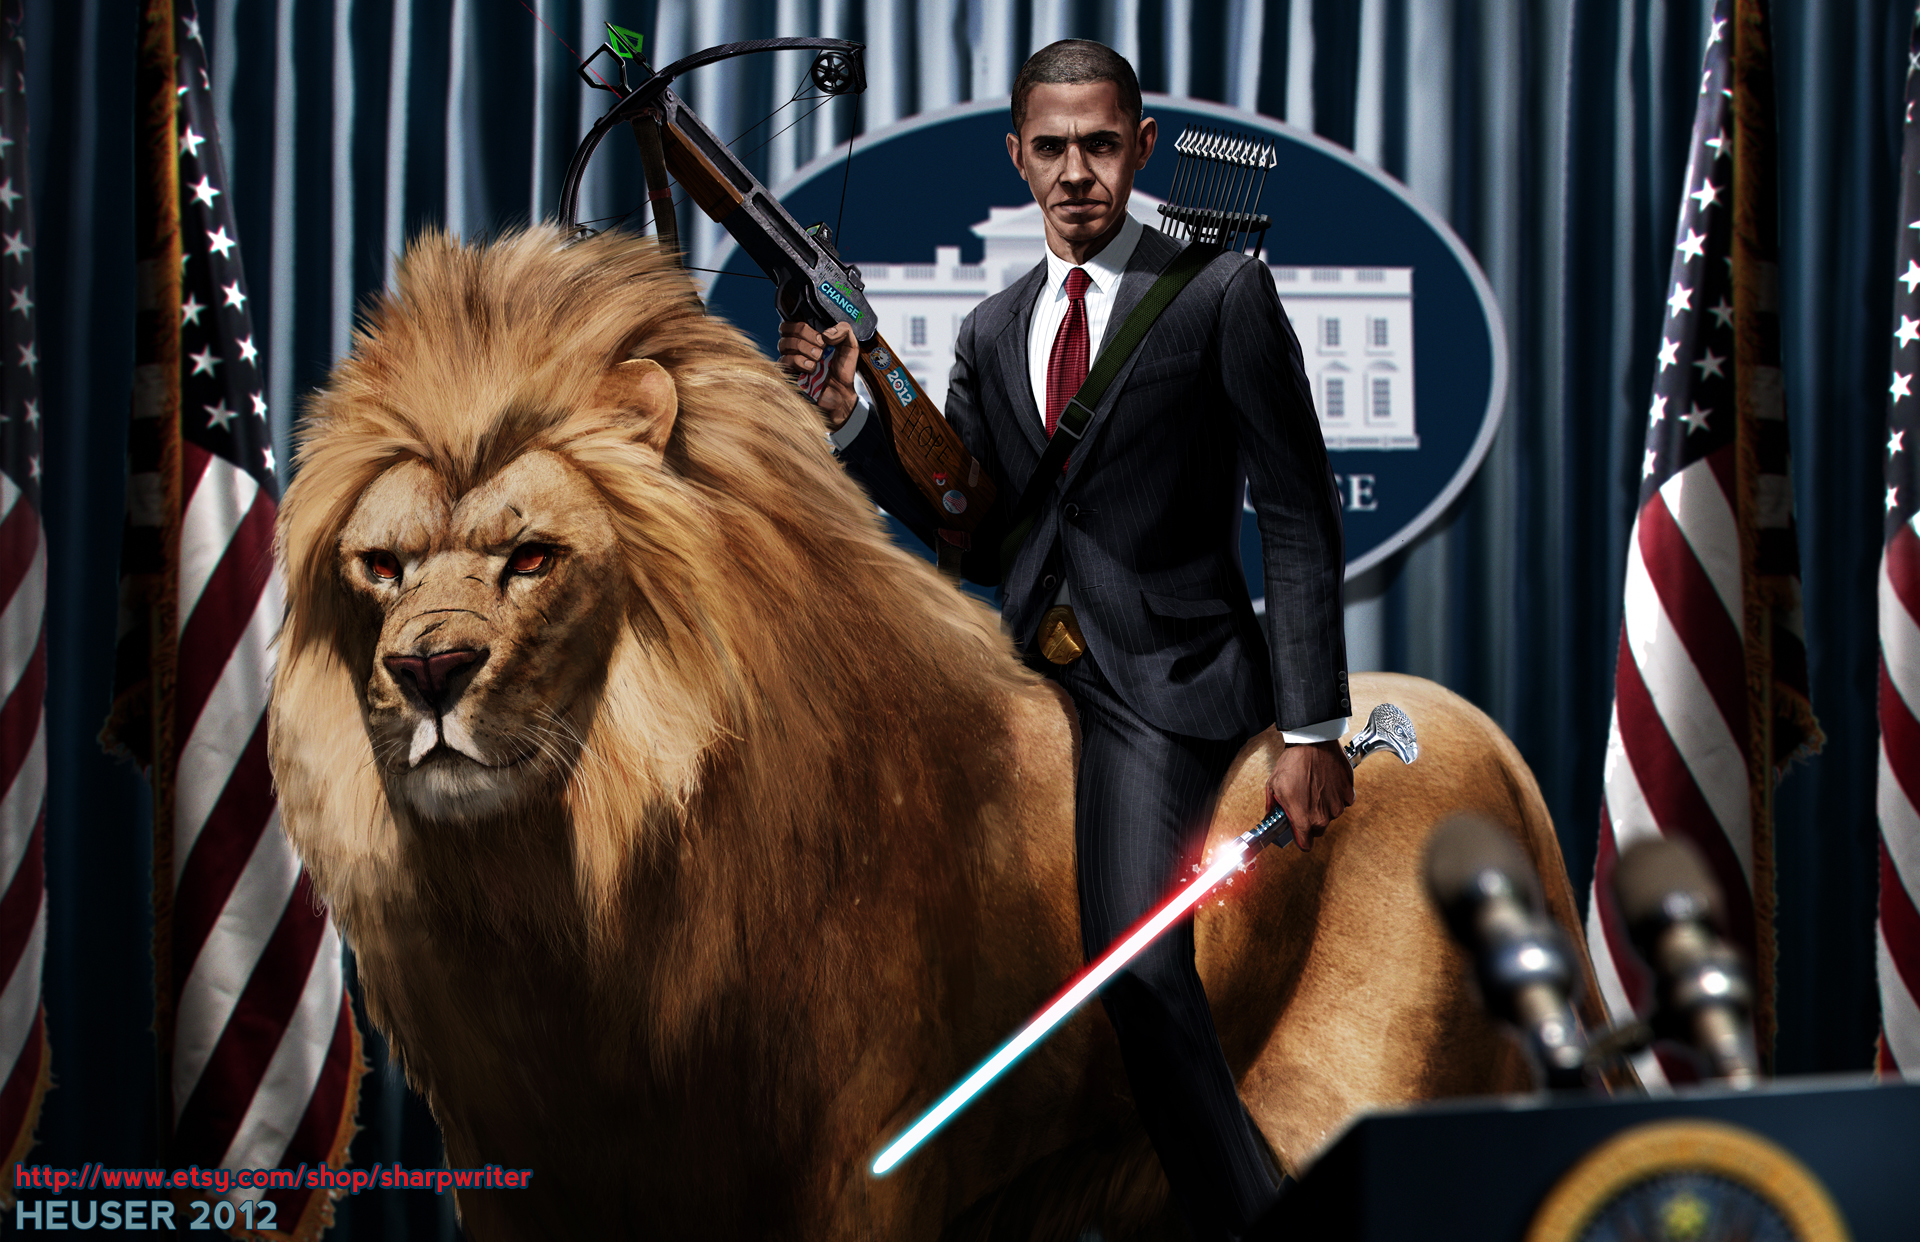 http://fc05.deviantart.net/fs70/f/2012/267/8/c/obama_riding_a_lion_by_sharpwriter-d5ftze6.jpg